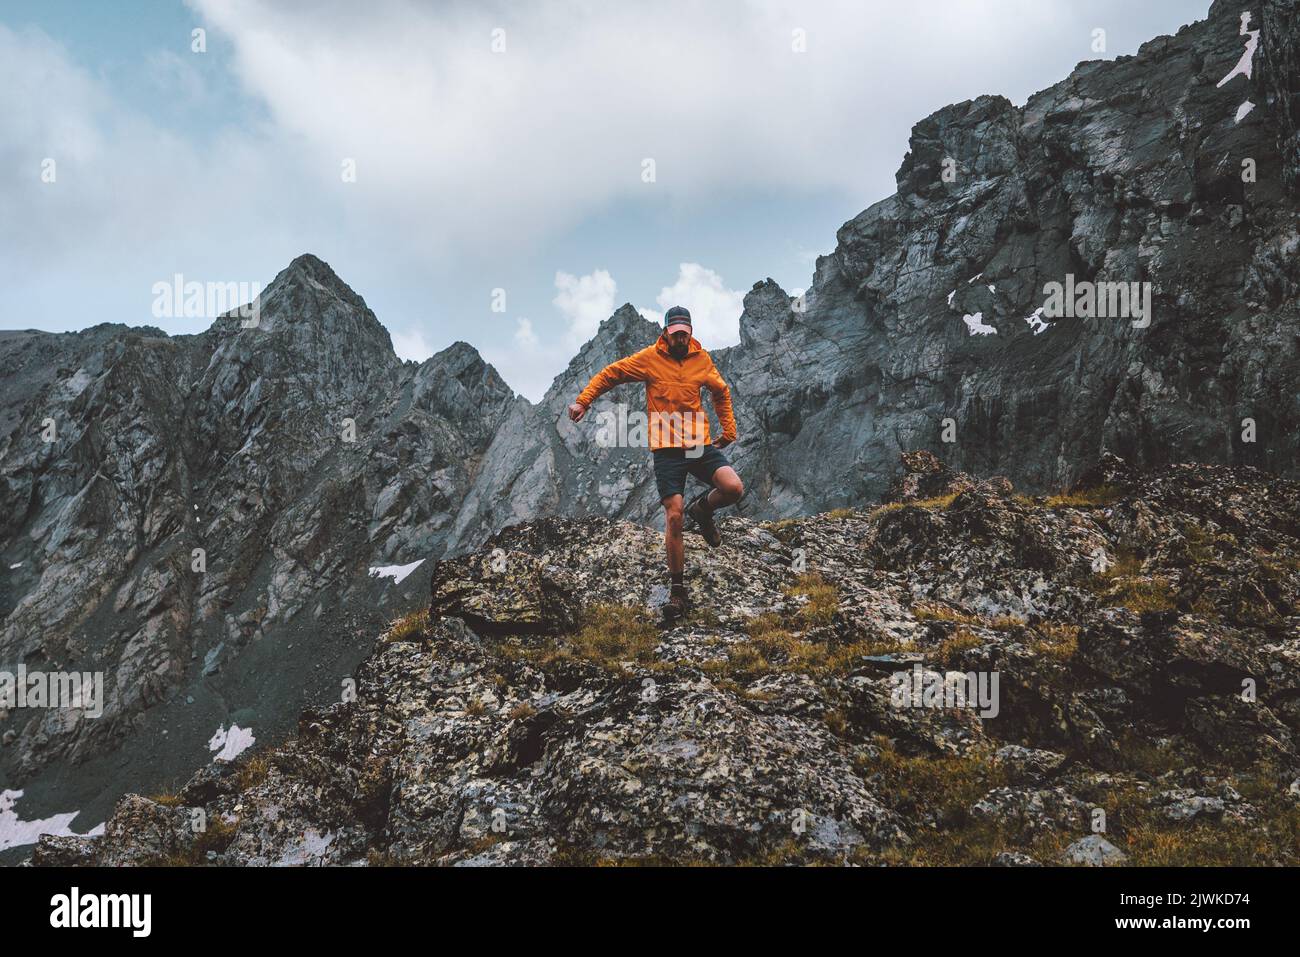 Man Trail Laufen allein Wandern in den Bergen Reise Klettern Abenteuer aktiv Extremurlaub Outdoor gesunde Lebensweise Freiheit Konzept Stockfoto